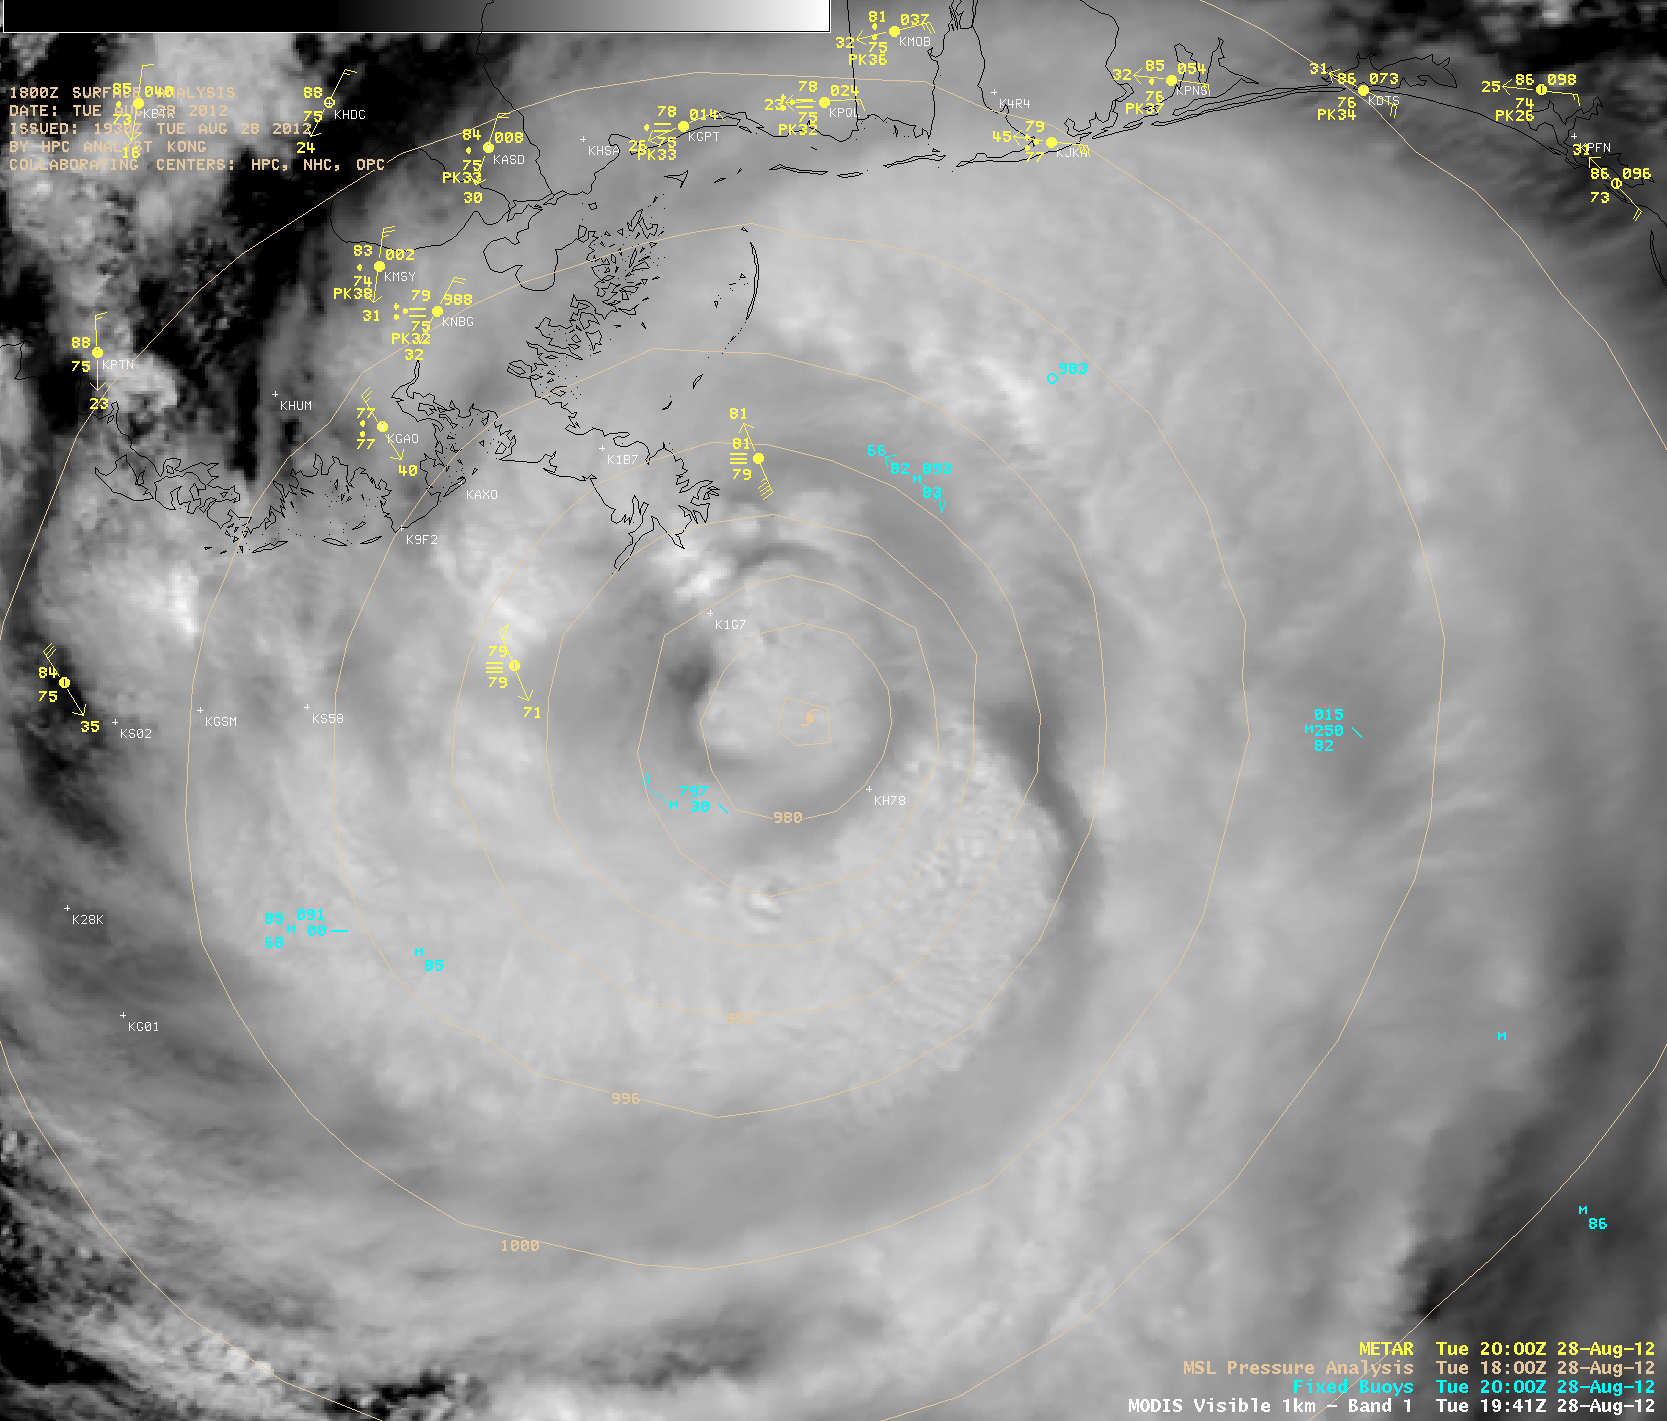 MODIS 0.65 Âµm visible and 11.0 Âµm IR images at 19:41 UTC